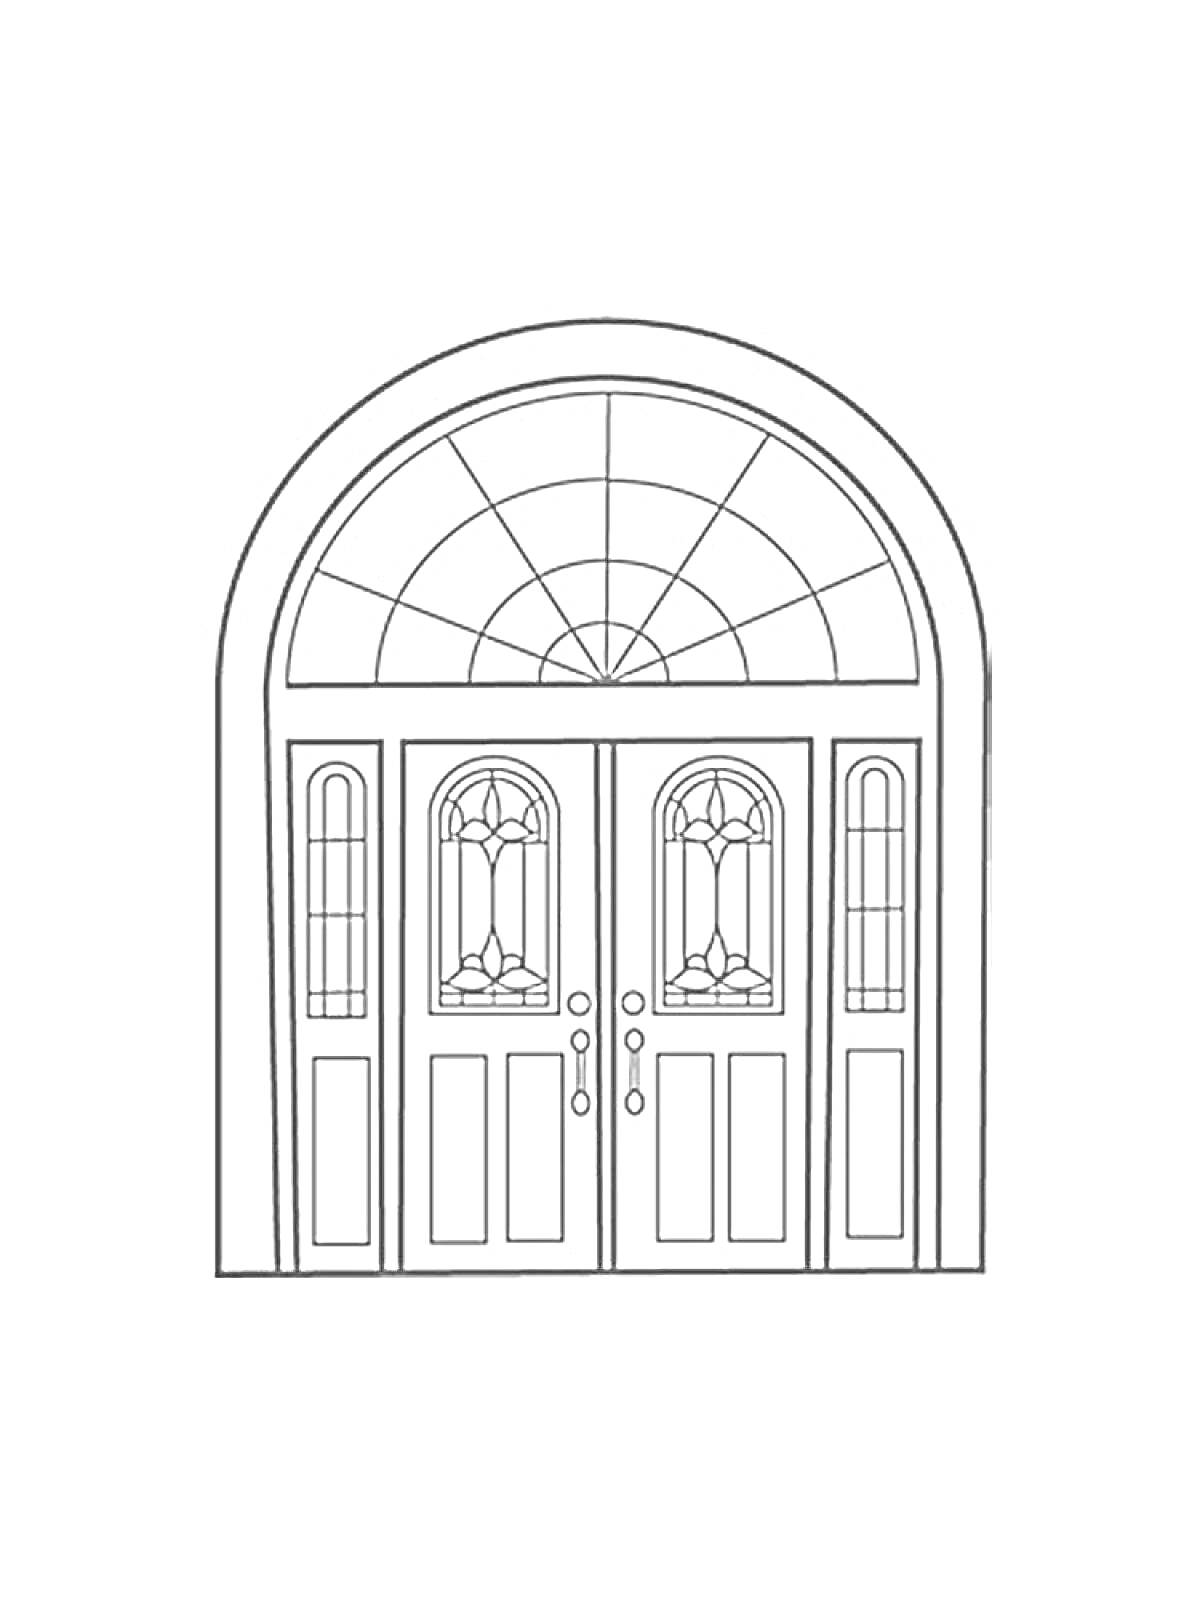 Раскраска Двойная дверь с арочным окном и декоративными стеклянными вставками